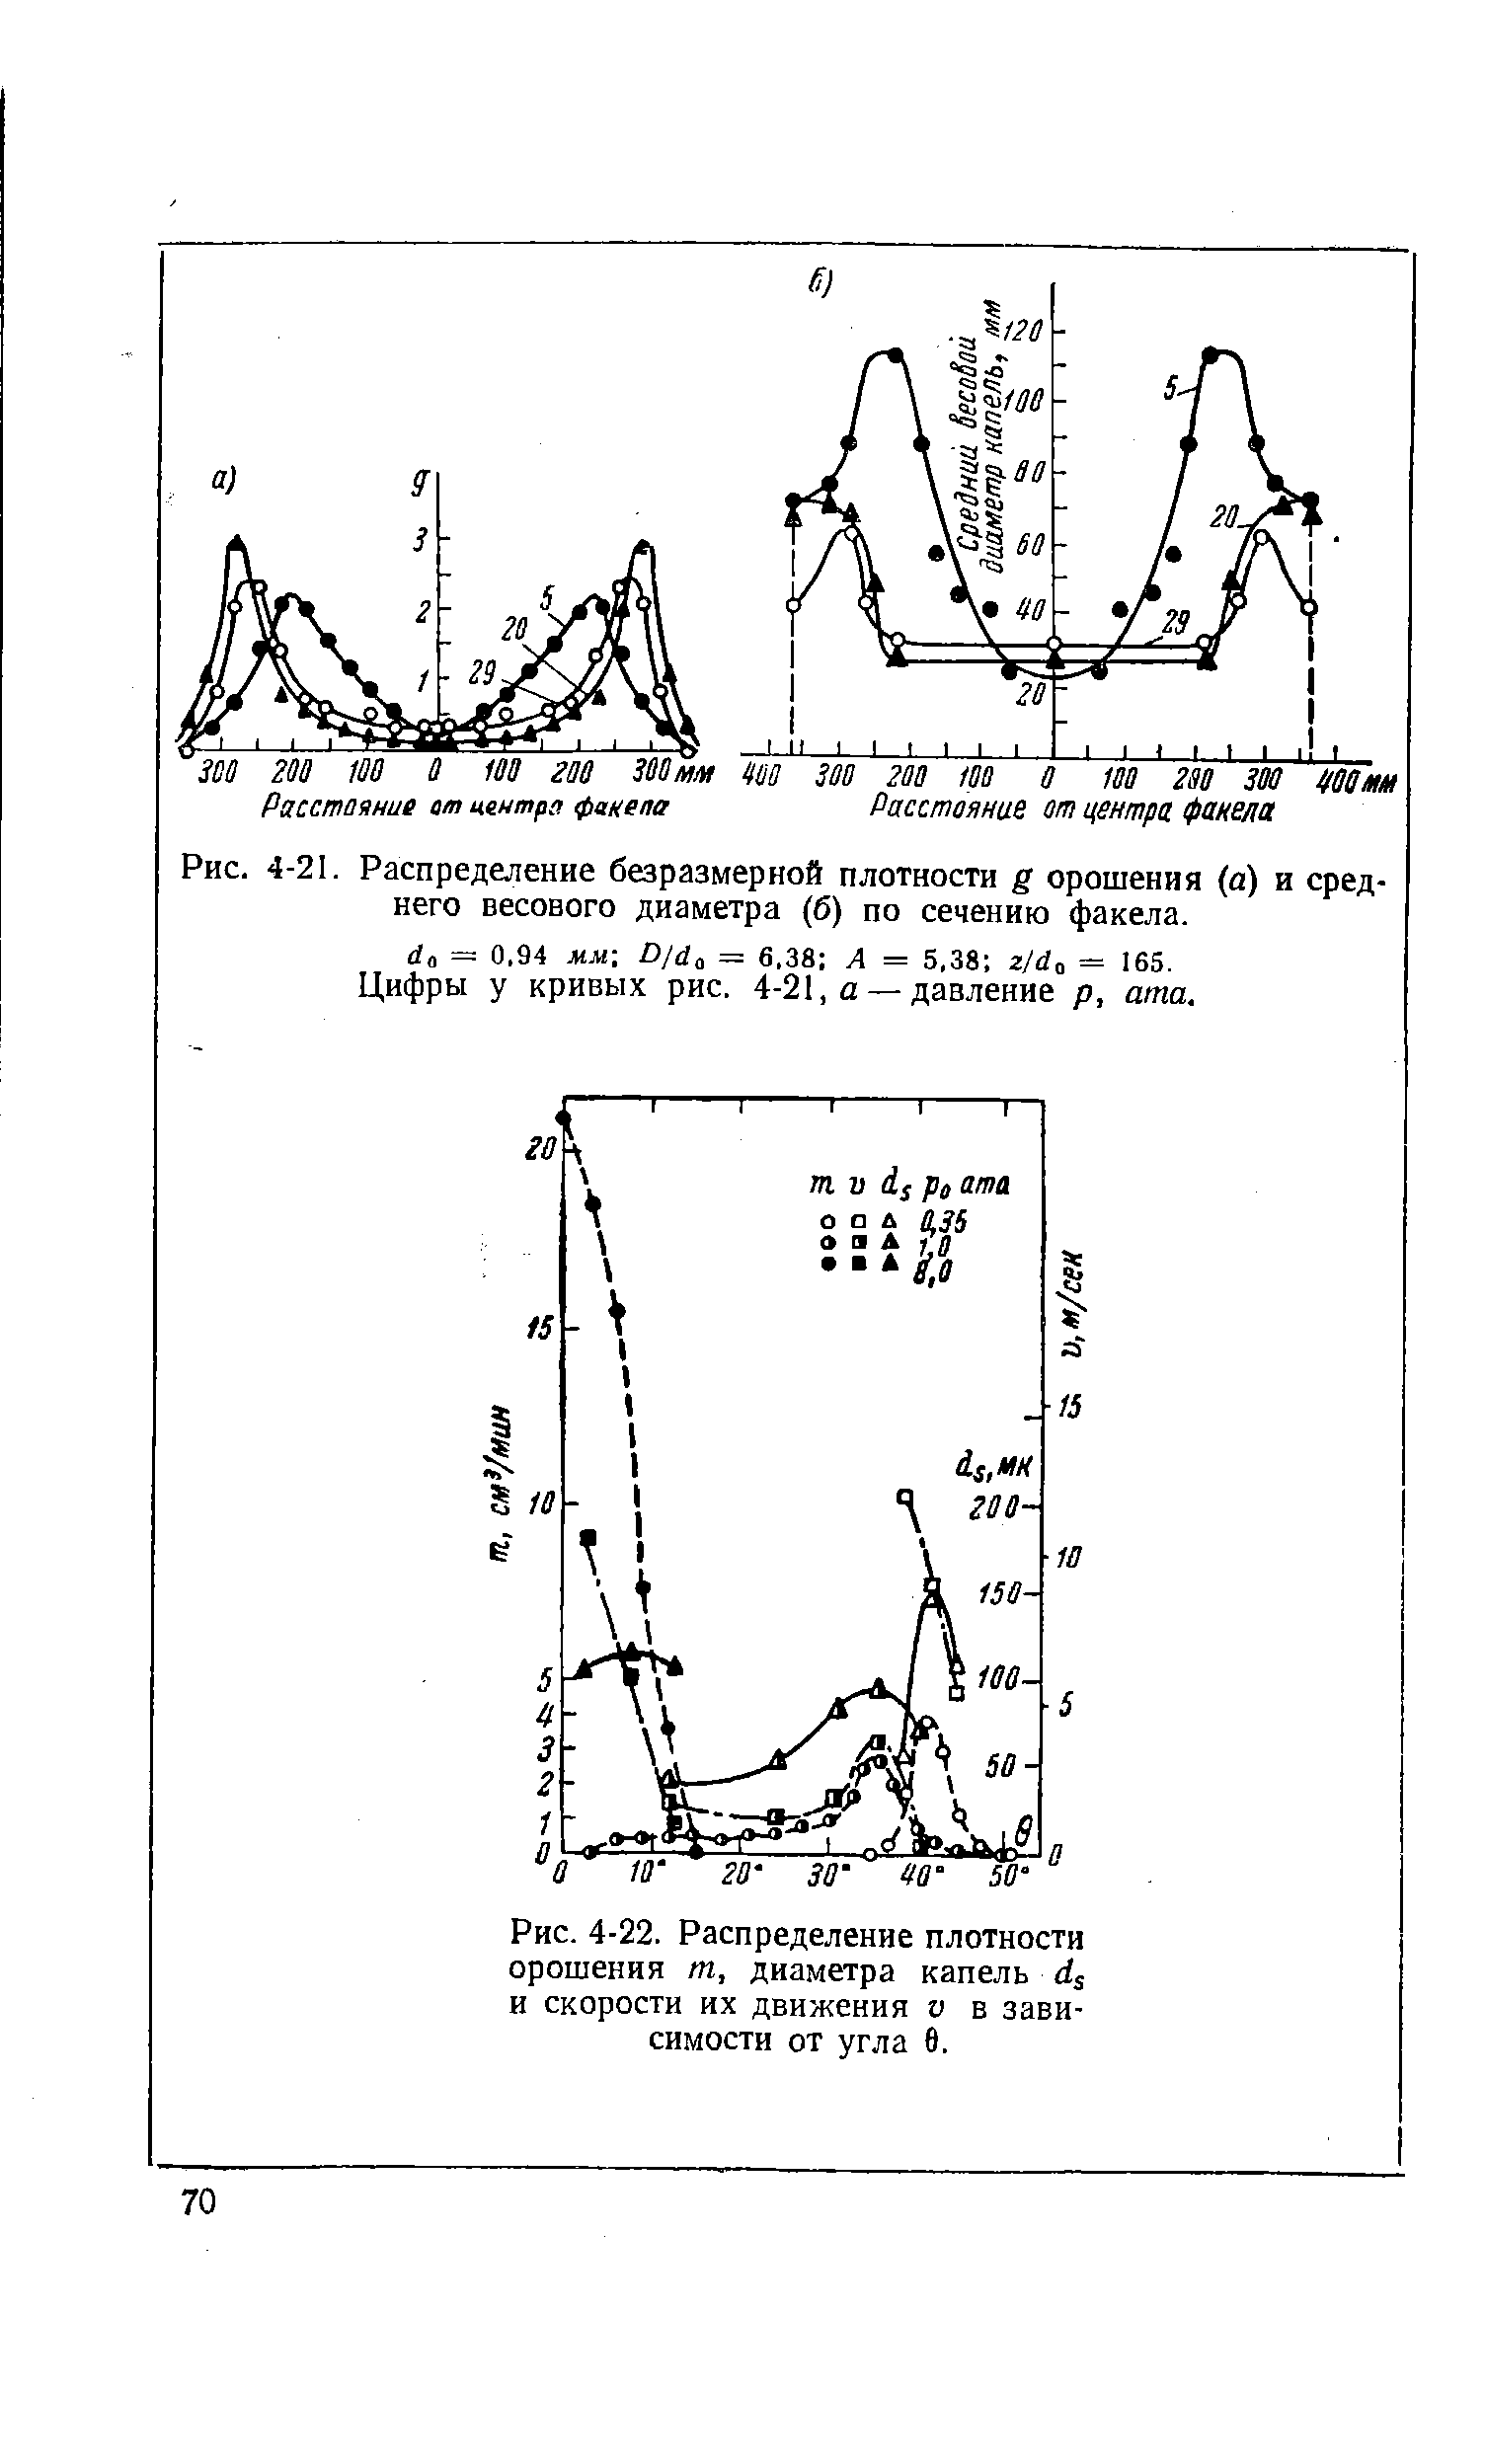 Рис. 4-21. Распределение безразмерной плотности g орошения (а) и среднего весового диаметра (б) по сечению факела.
